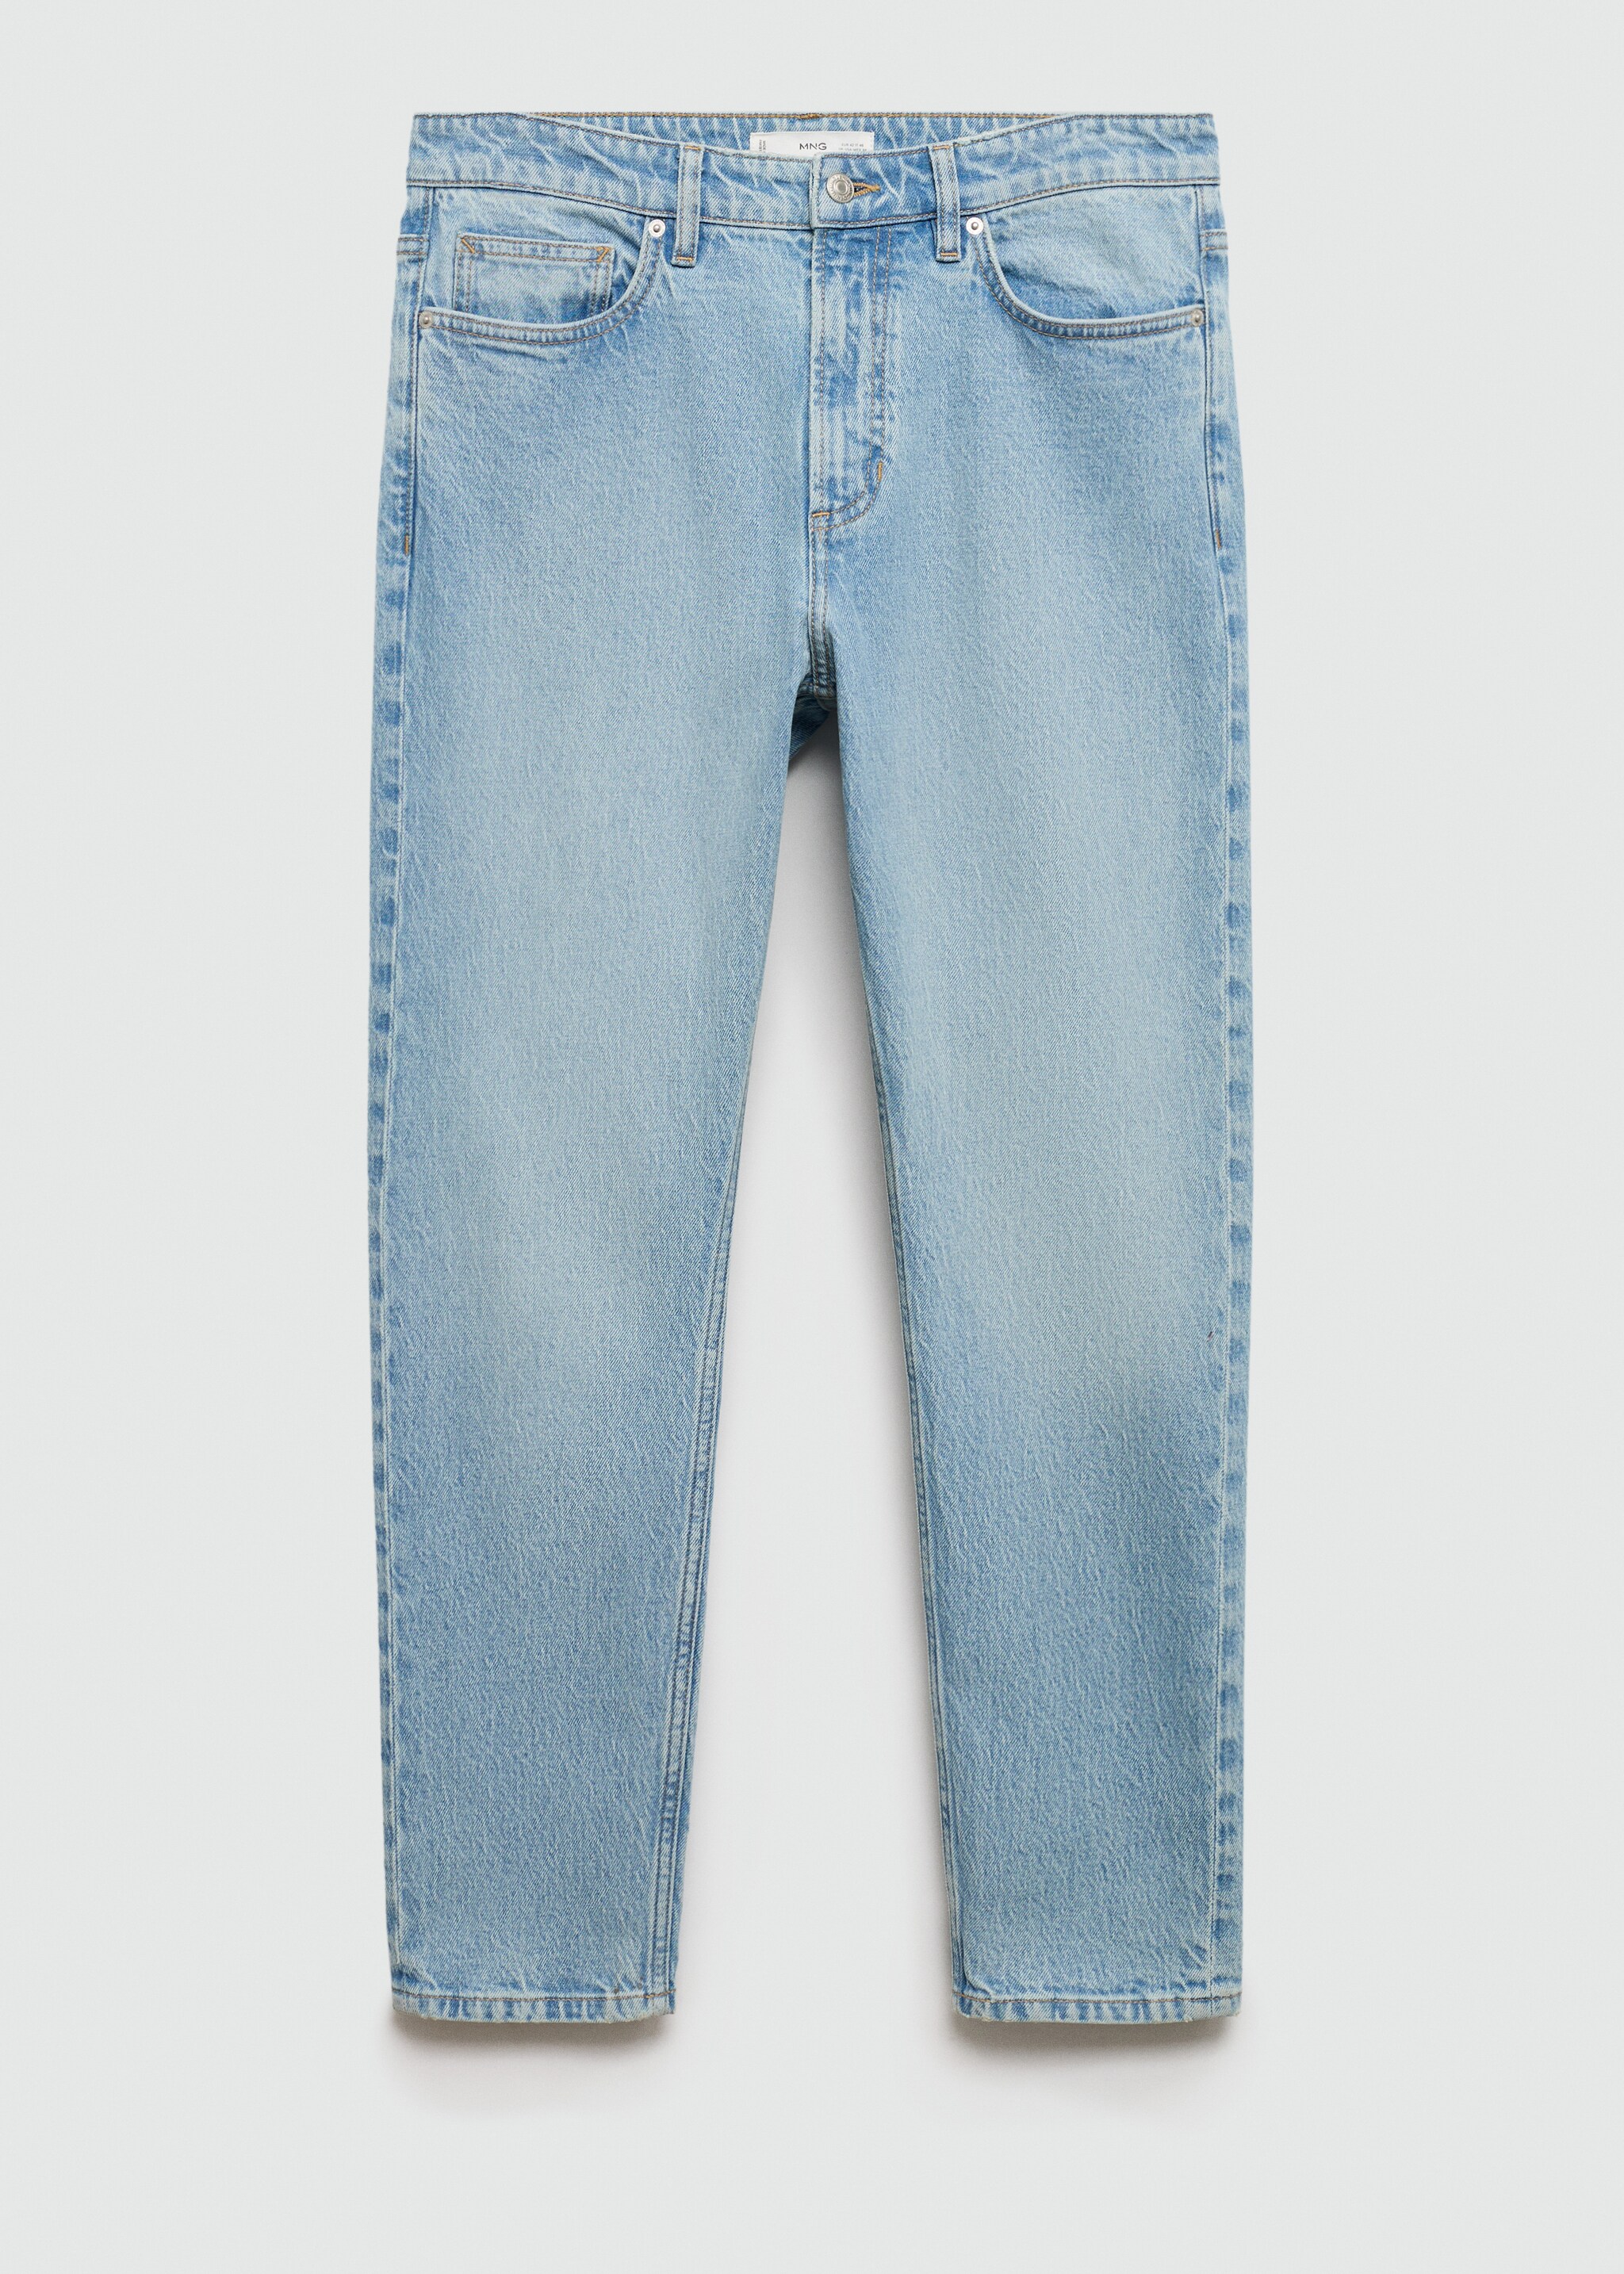 Jeans Ben tapered-fit - Articolo senza modello